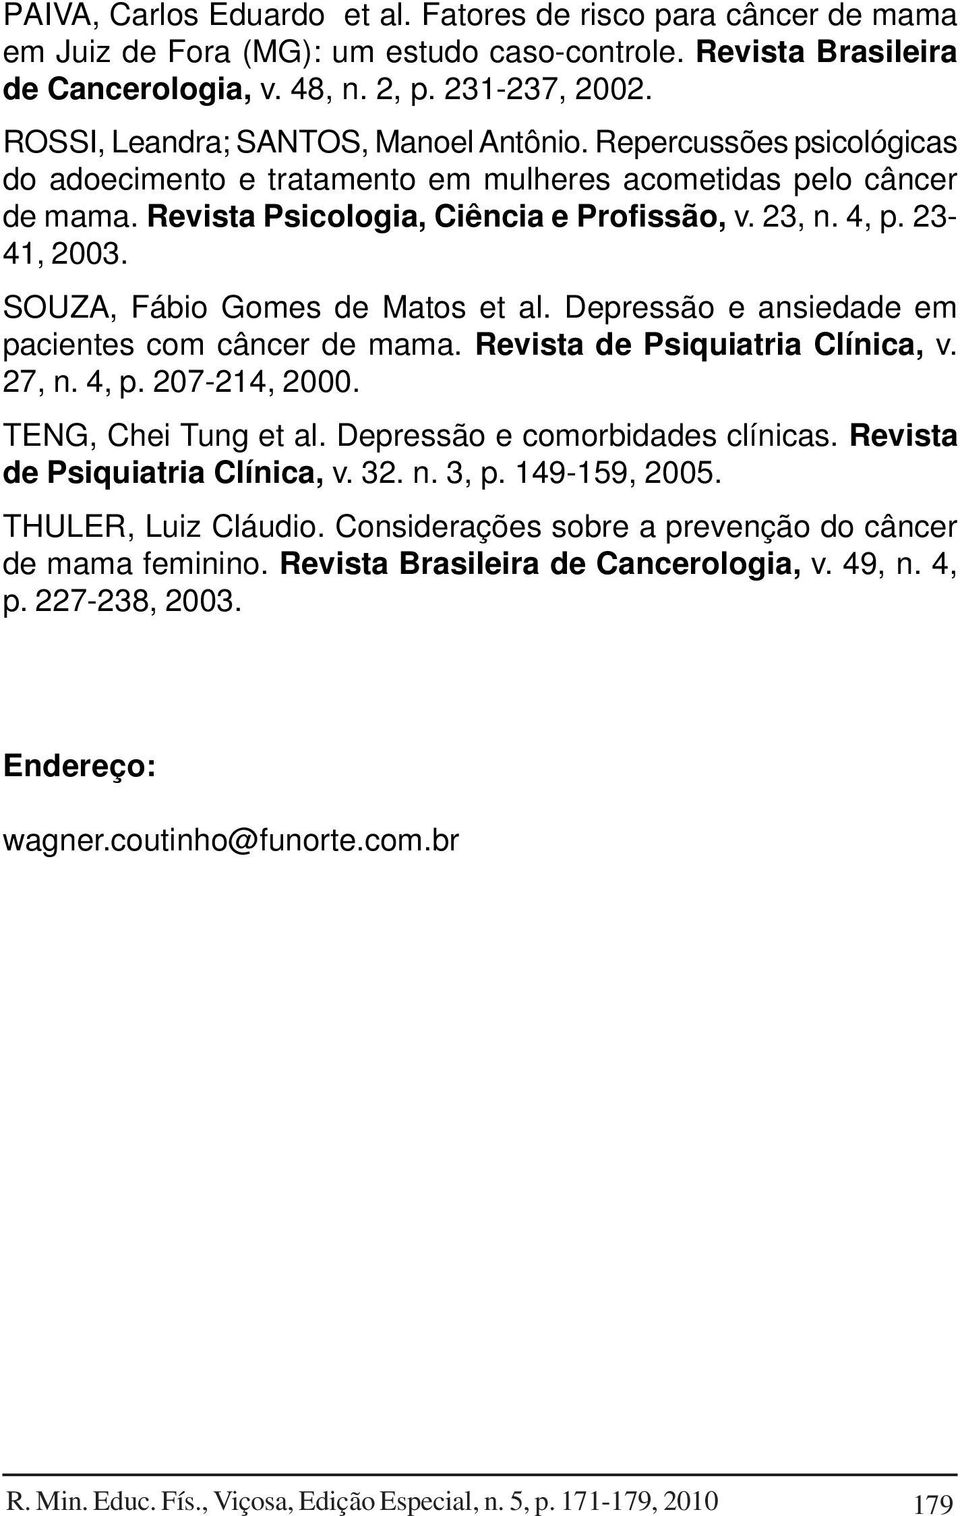 23-41, 2003. SOUZA, Fábio Gomes de Matos et al. Depressão e ansiedade em pacientes com câncer de mama. Revista de Psiquiatria Clínica, v. 27, n. 4, p. 207-214, 2000. TENG, Chei Tung et al.